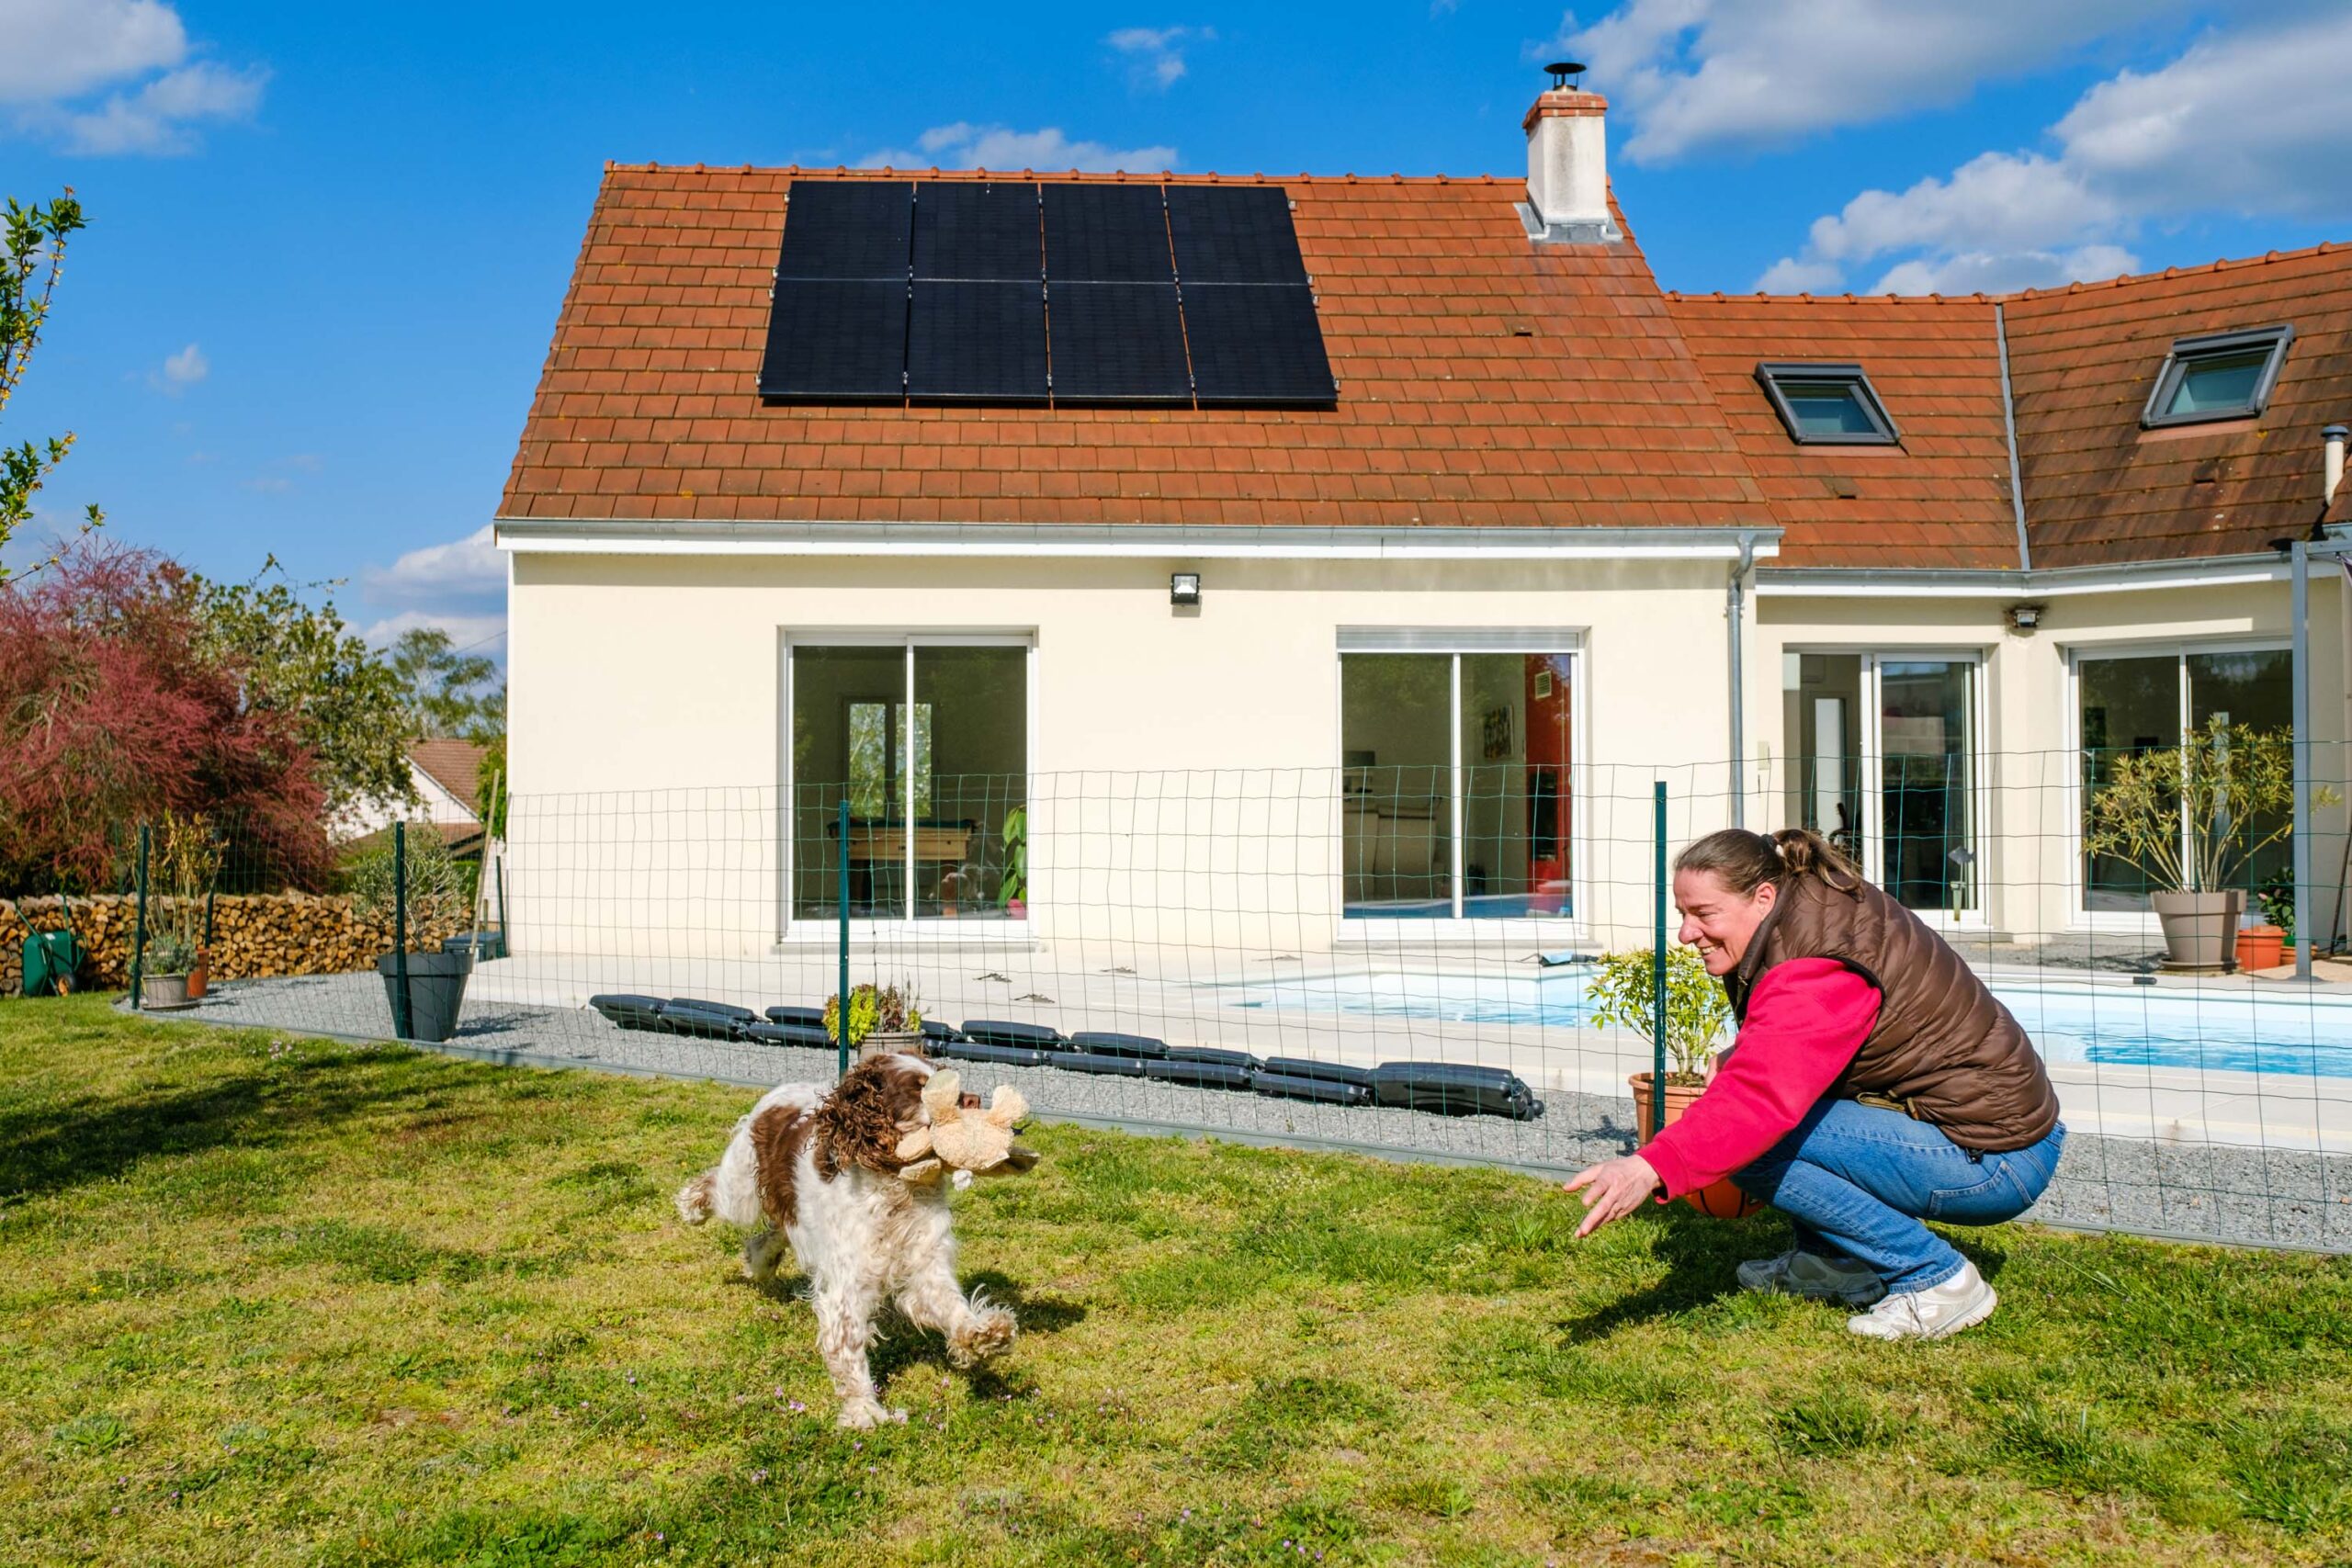 femme jouant avec son chien dans son jardin, avec des panneaux solaires sur le toit de sa maison en fond